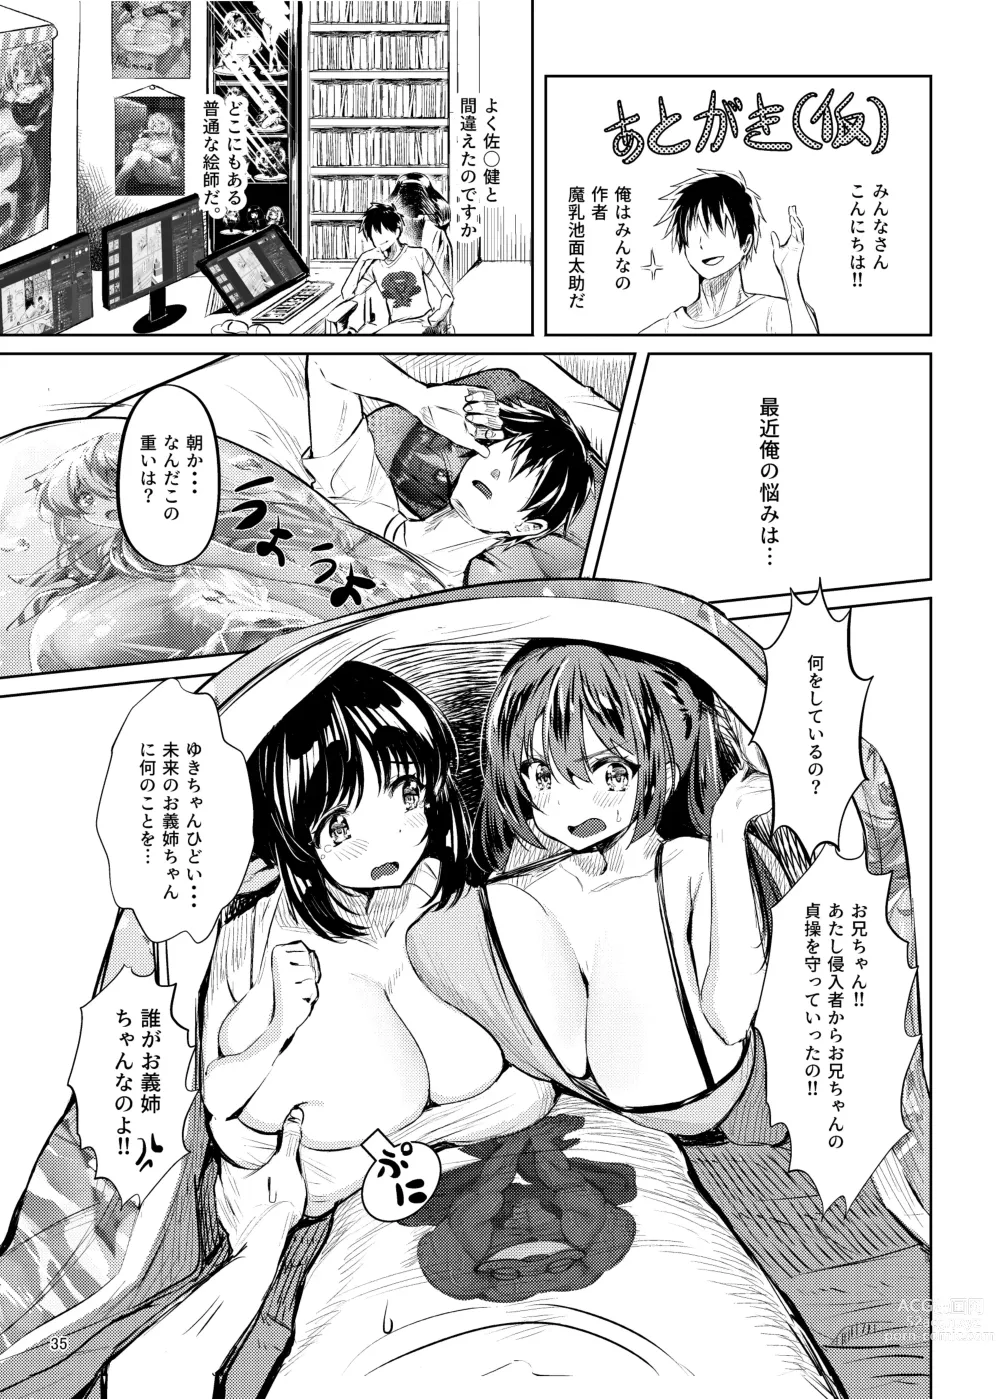 Page 36 of doujinshi Iroiro jijou ga attaga kekka to shite ore no bakunyuu osananajimi ga do inran ni natte ita.